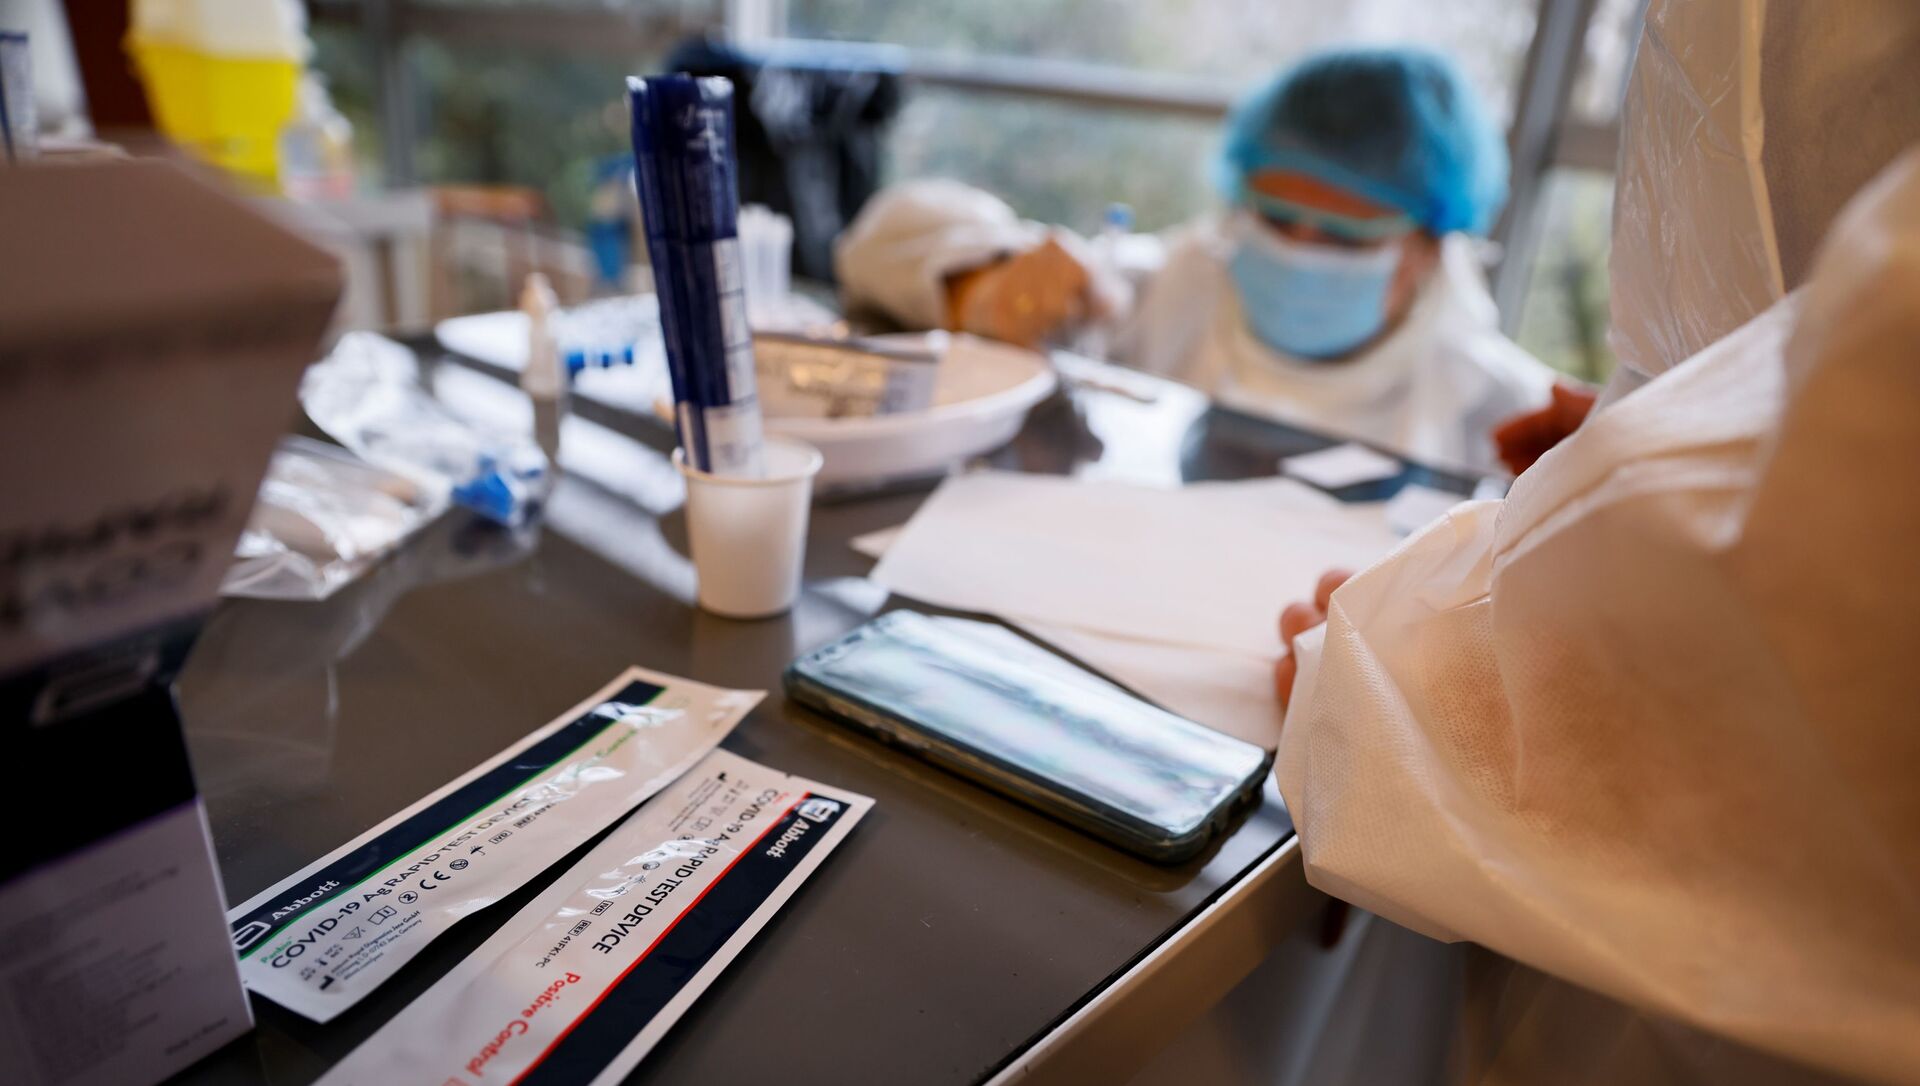 Наборы для тестирования антигена лежат на столе, пока медицинский работник проводит тест во время операции по массовому скринингу на Covid-19 - Sputnik Абхазия, 1920, 13.07.2021